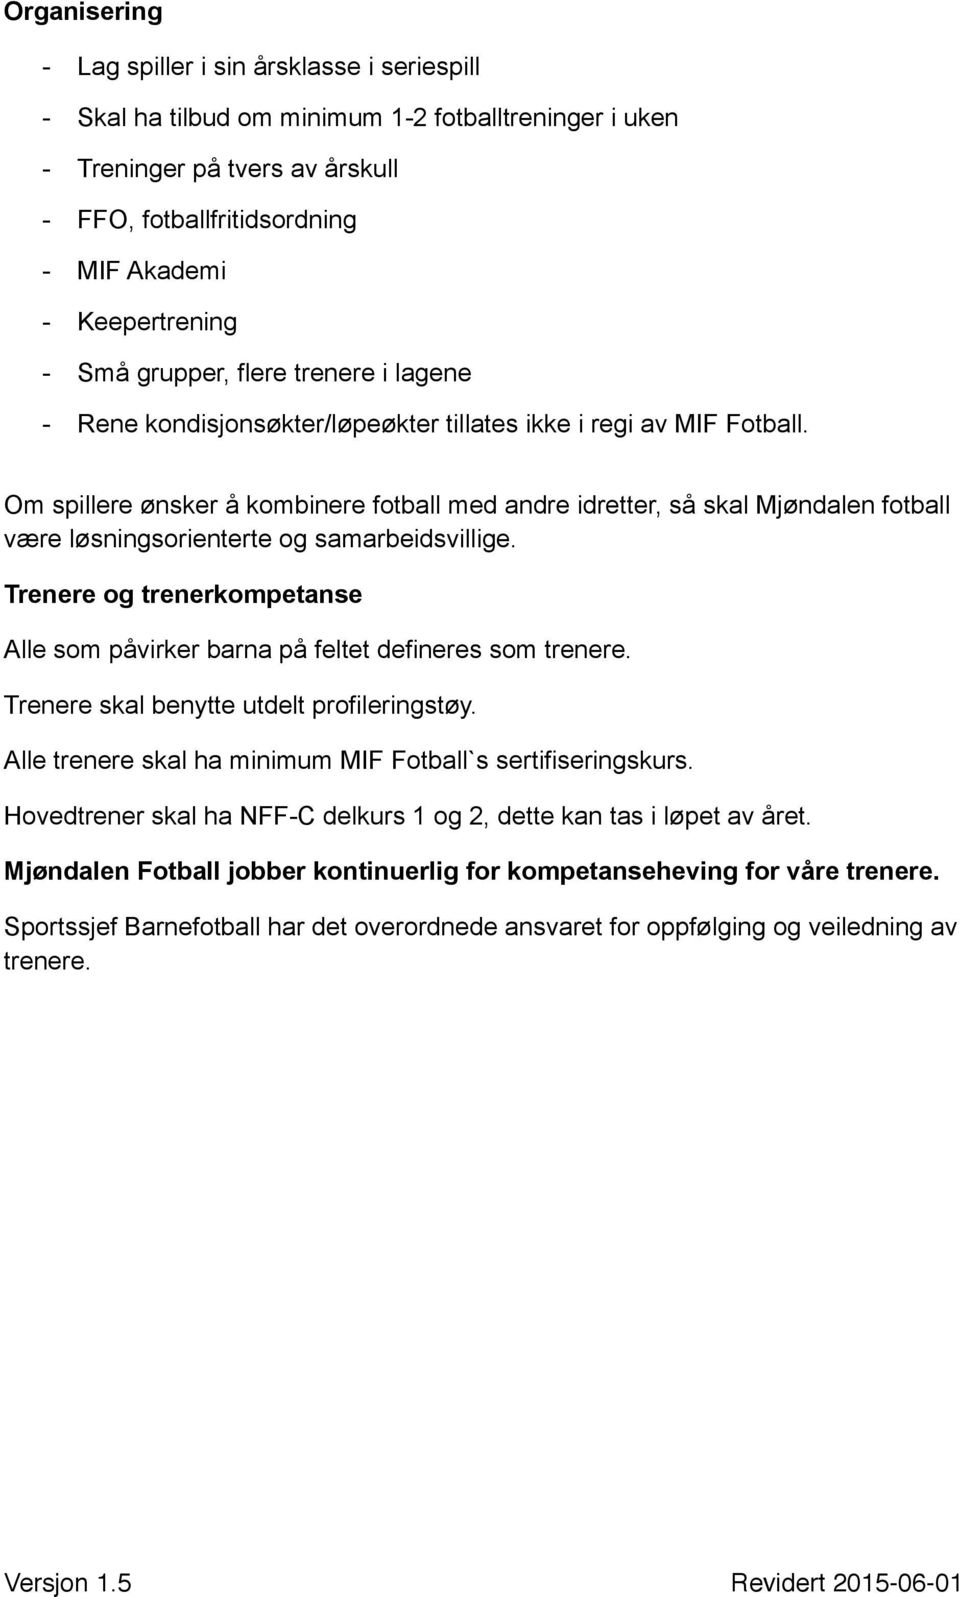 Om spillere ønsker å kombinere fotball med andre idretter, så skal Mjøndalen fotball være løsningsorienterte og samarbeidsvillige.